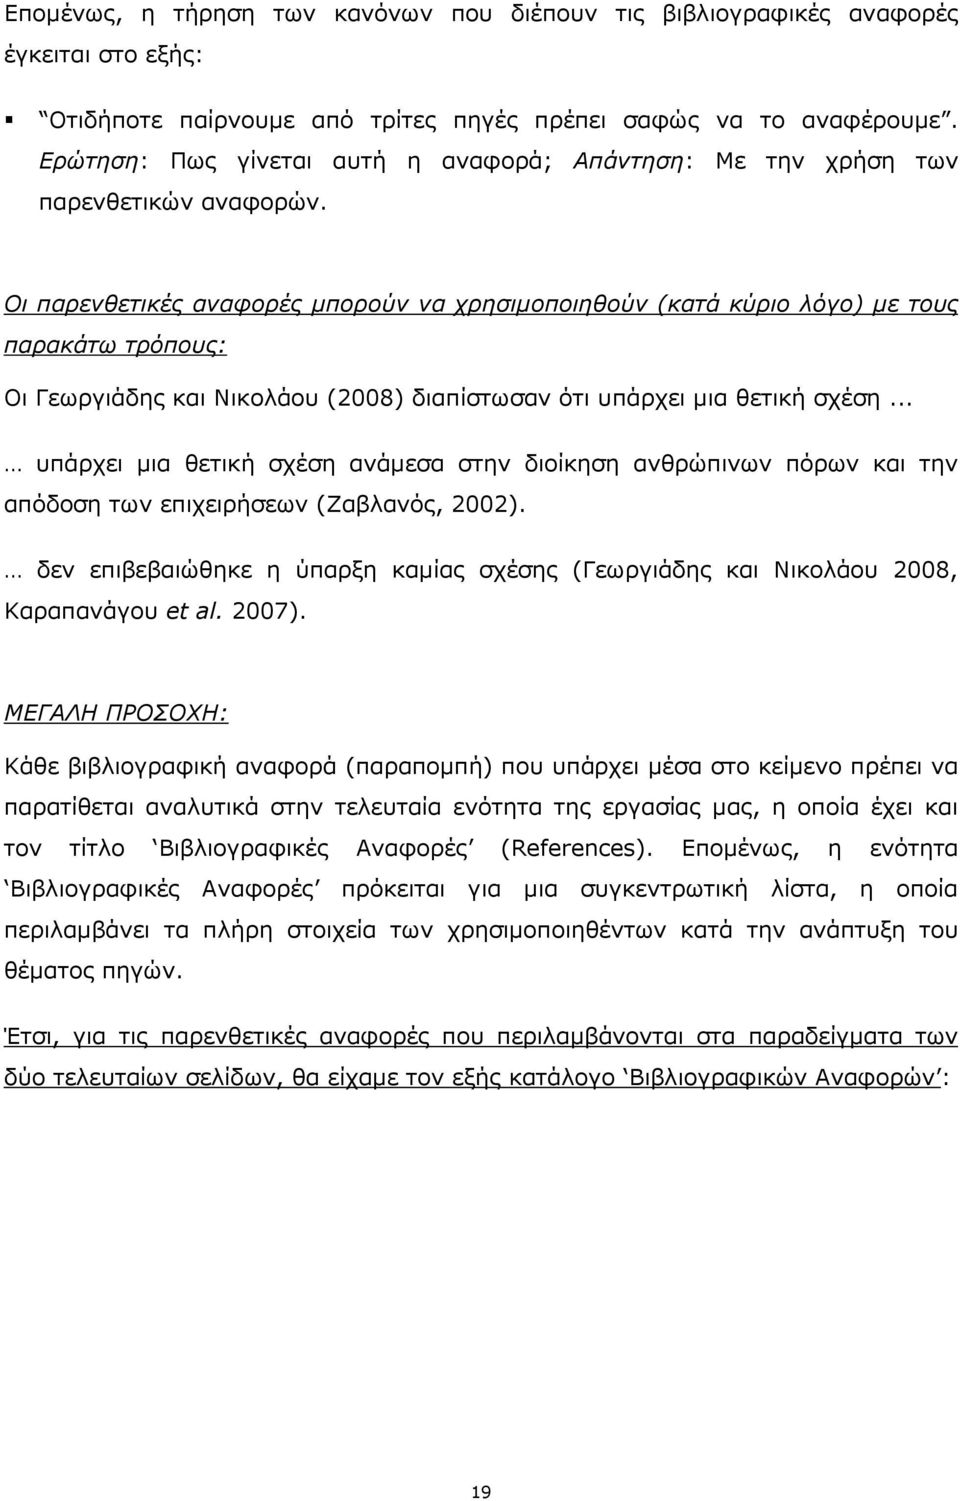 Οι παρενθετικές αναφορές µπορούν να χρησιµοποιηθούν (κατά κύριο λόγο) µε τους παρακάτω τρόπους: Οι Γεωργιάδης και Νικολάου (2008) διαπίστωσαν ότι υπάρχει µια θετική σχέση.